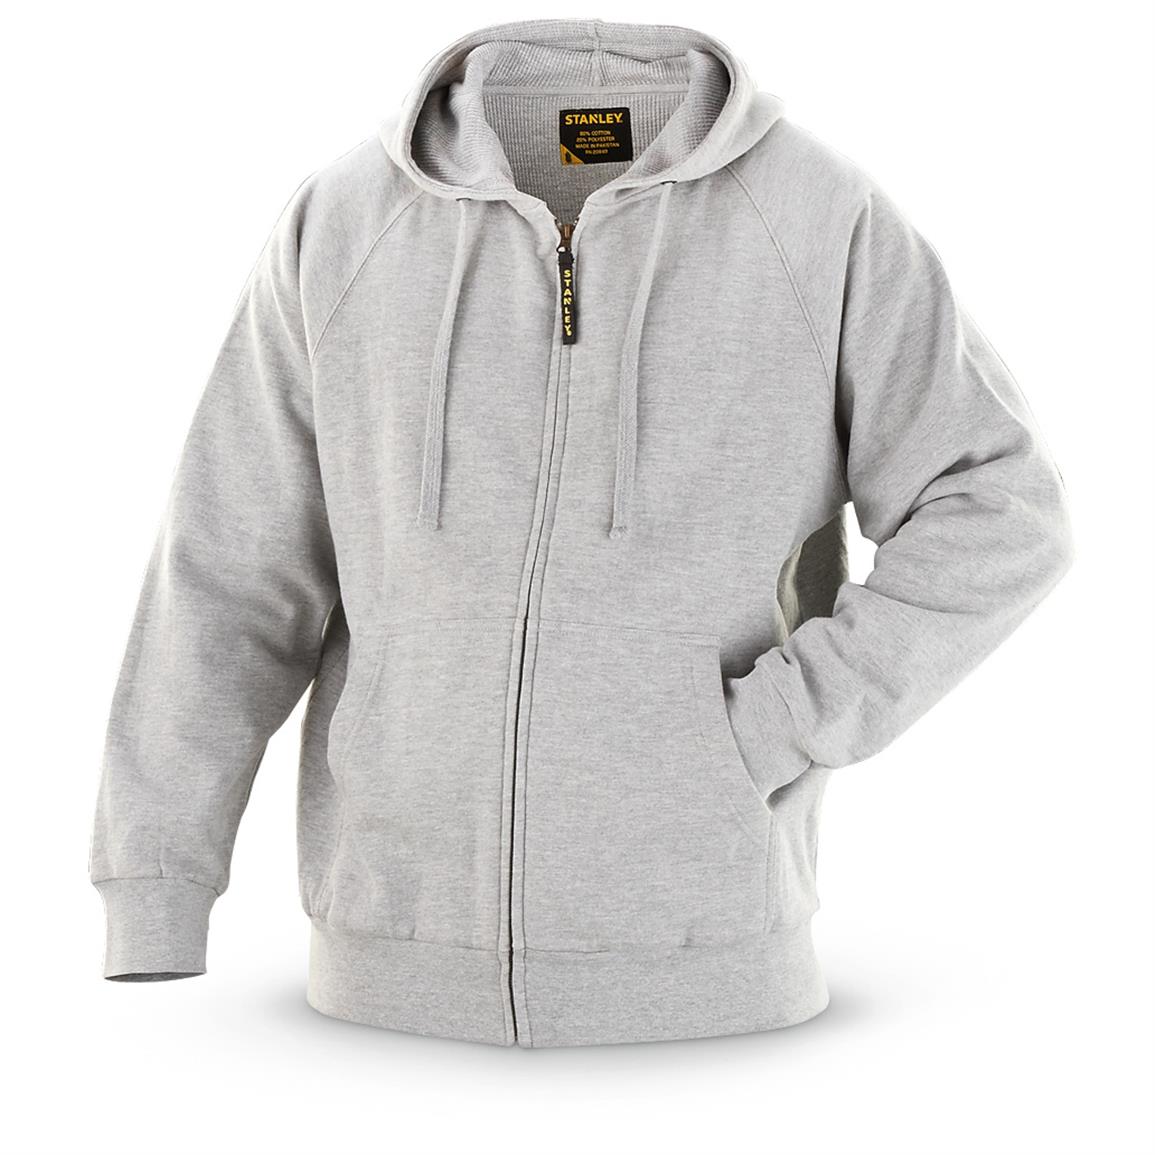 Stanley Thermal-lined Full-zip Hooded Sweatshirt - 616563, Sweatshirts ...